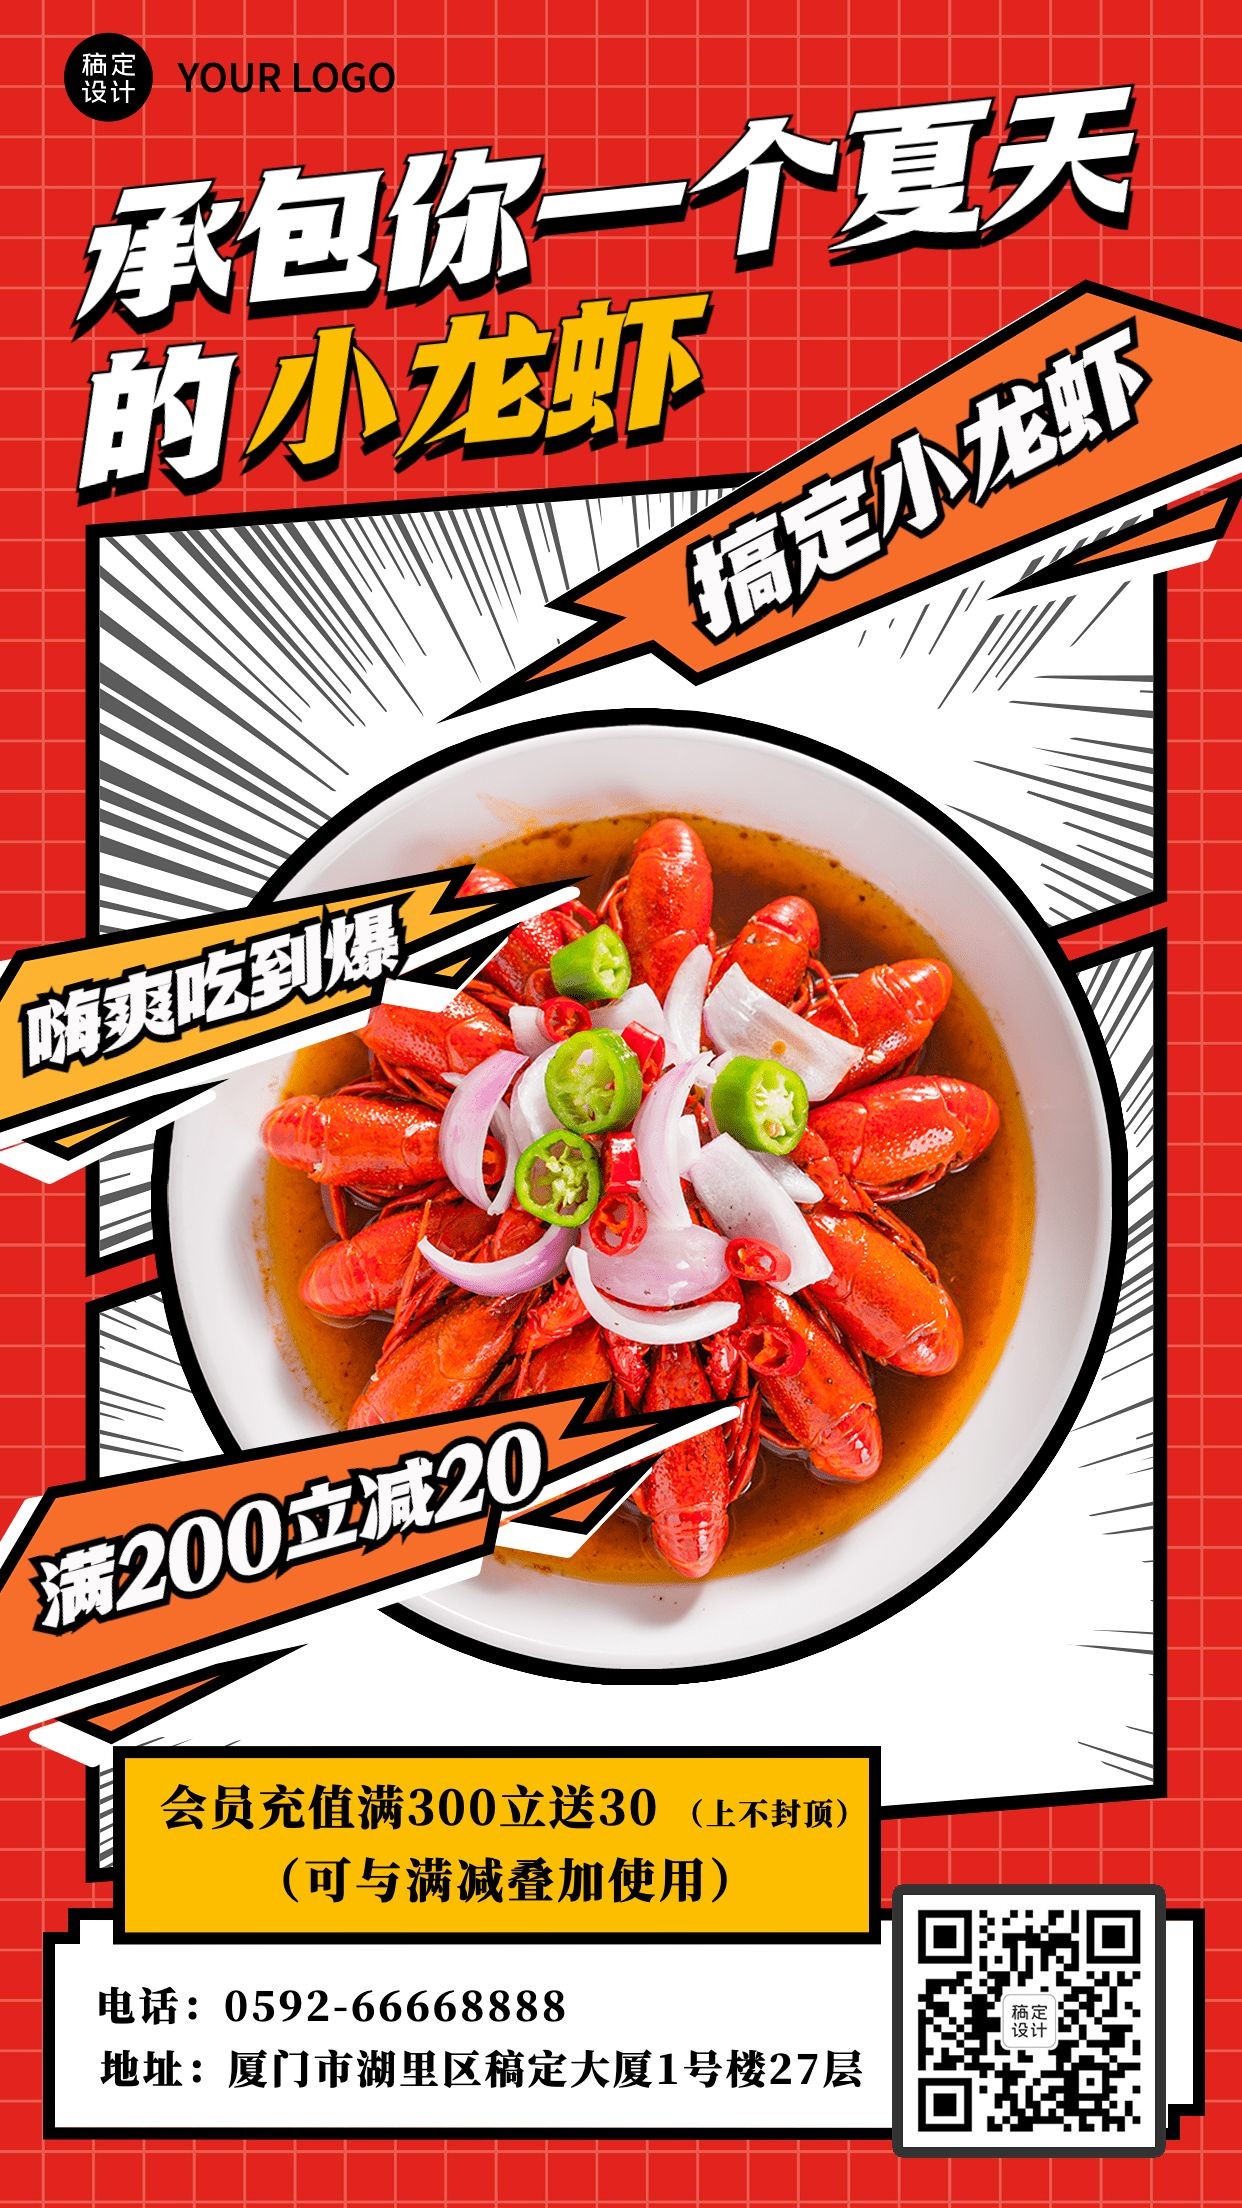 餐饮美食小龙虾新品上市满减活动营销插画手机海报预览效果